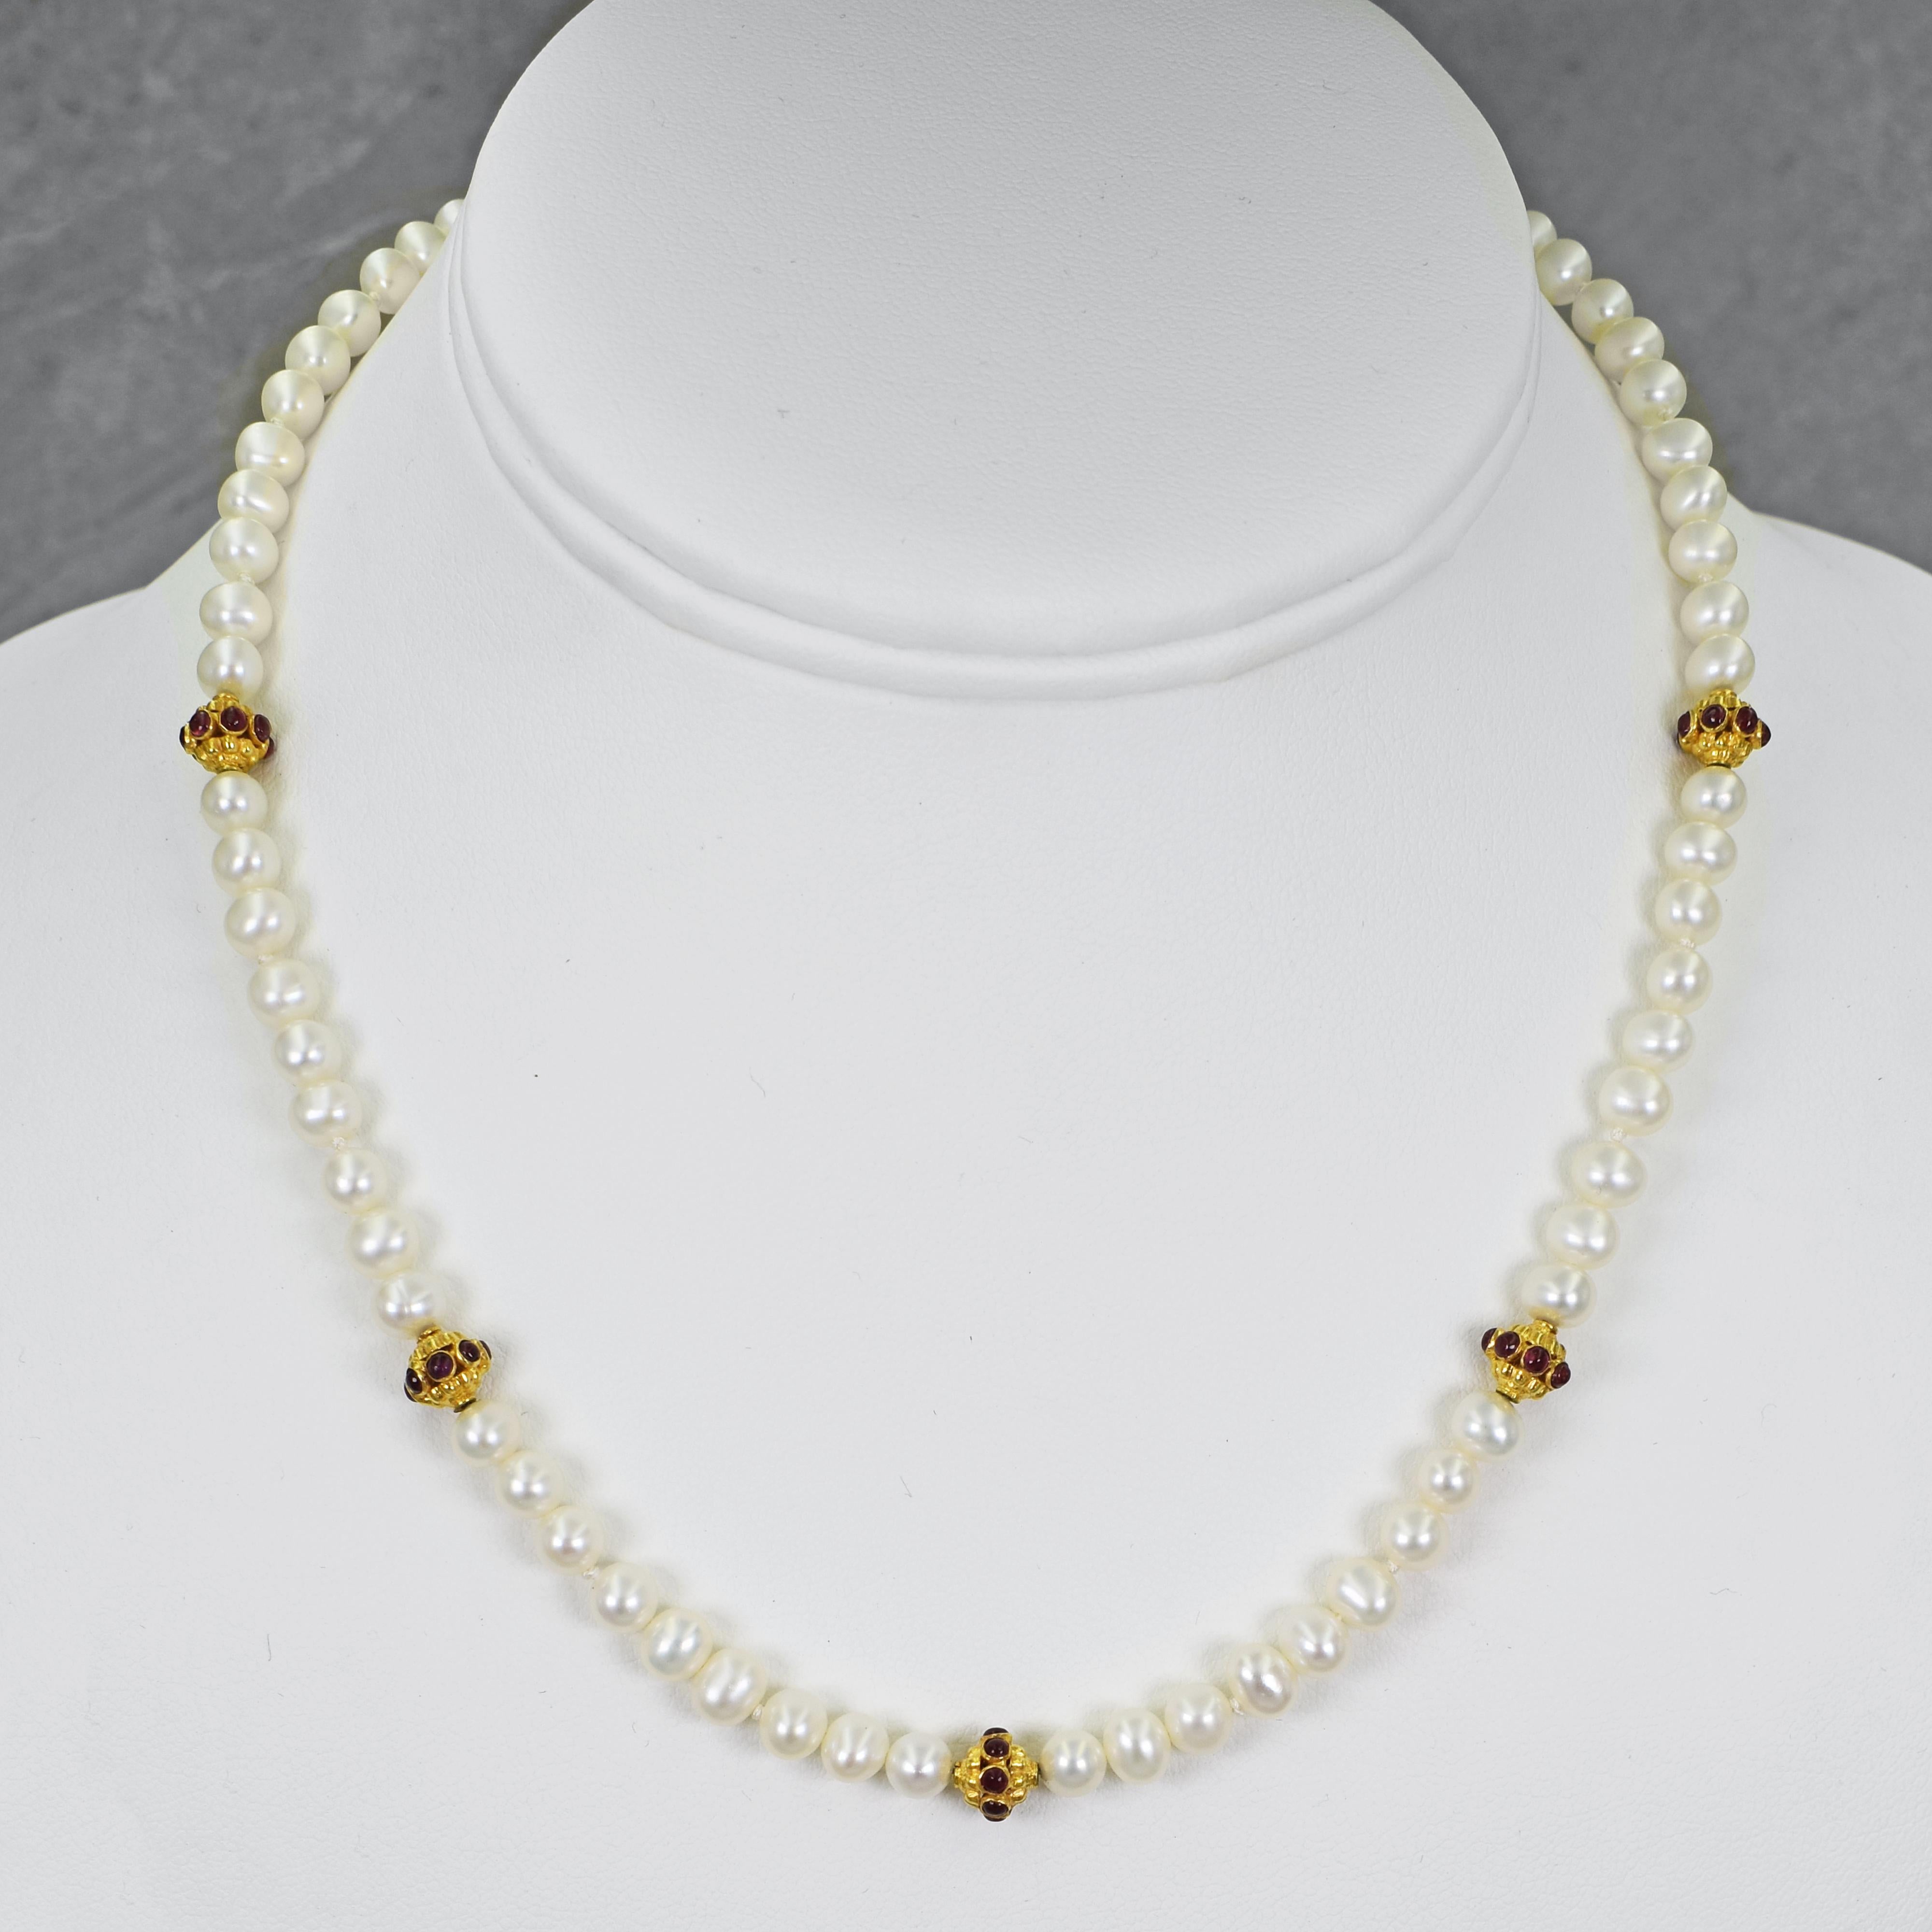 Collier de perles d'eau douce nouées, rubis et or jaune 22k. Le collier est terminé par un fermoir à bascule en or 22k. La longueur du fil de perles perlées est de 16,5 pouces. 